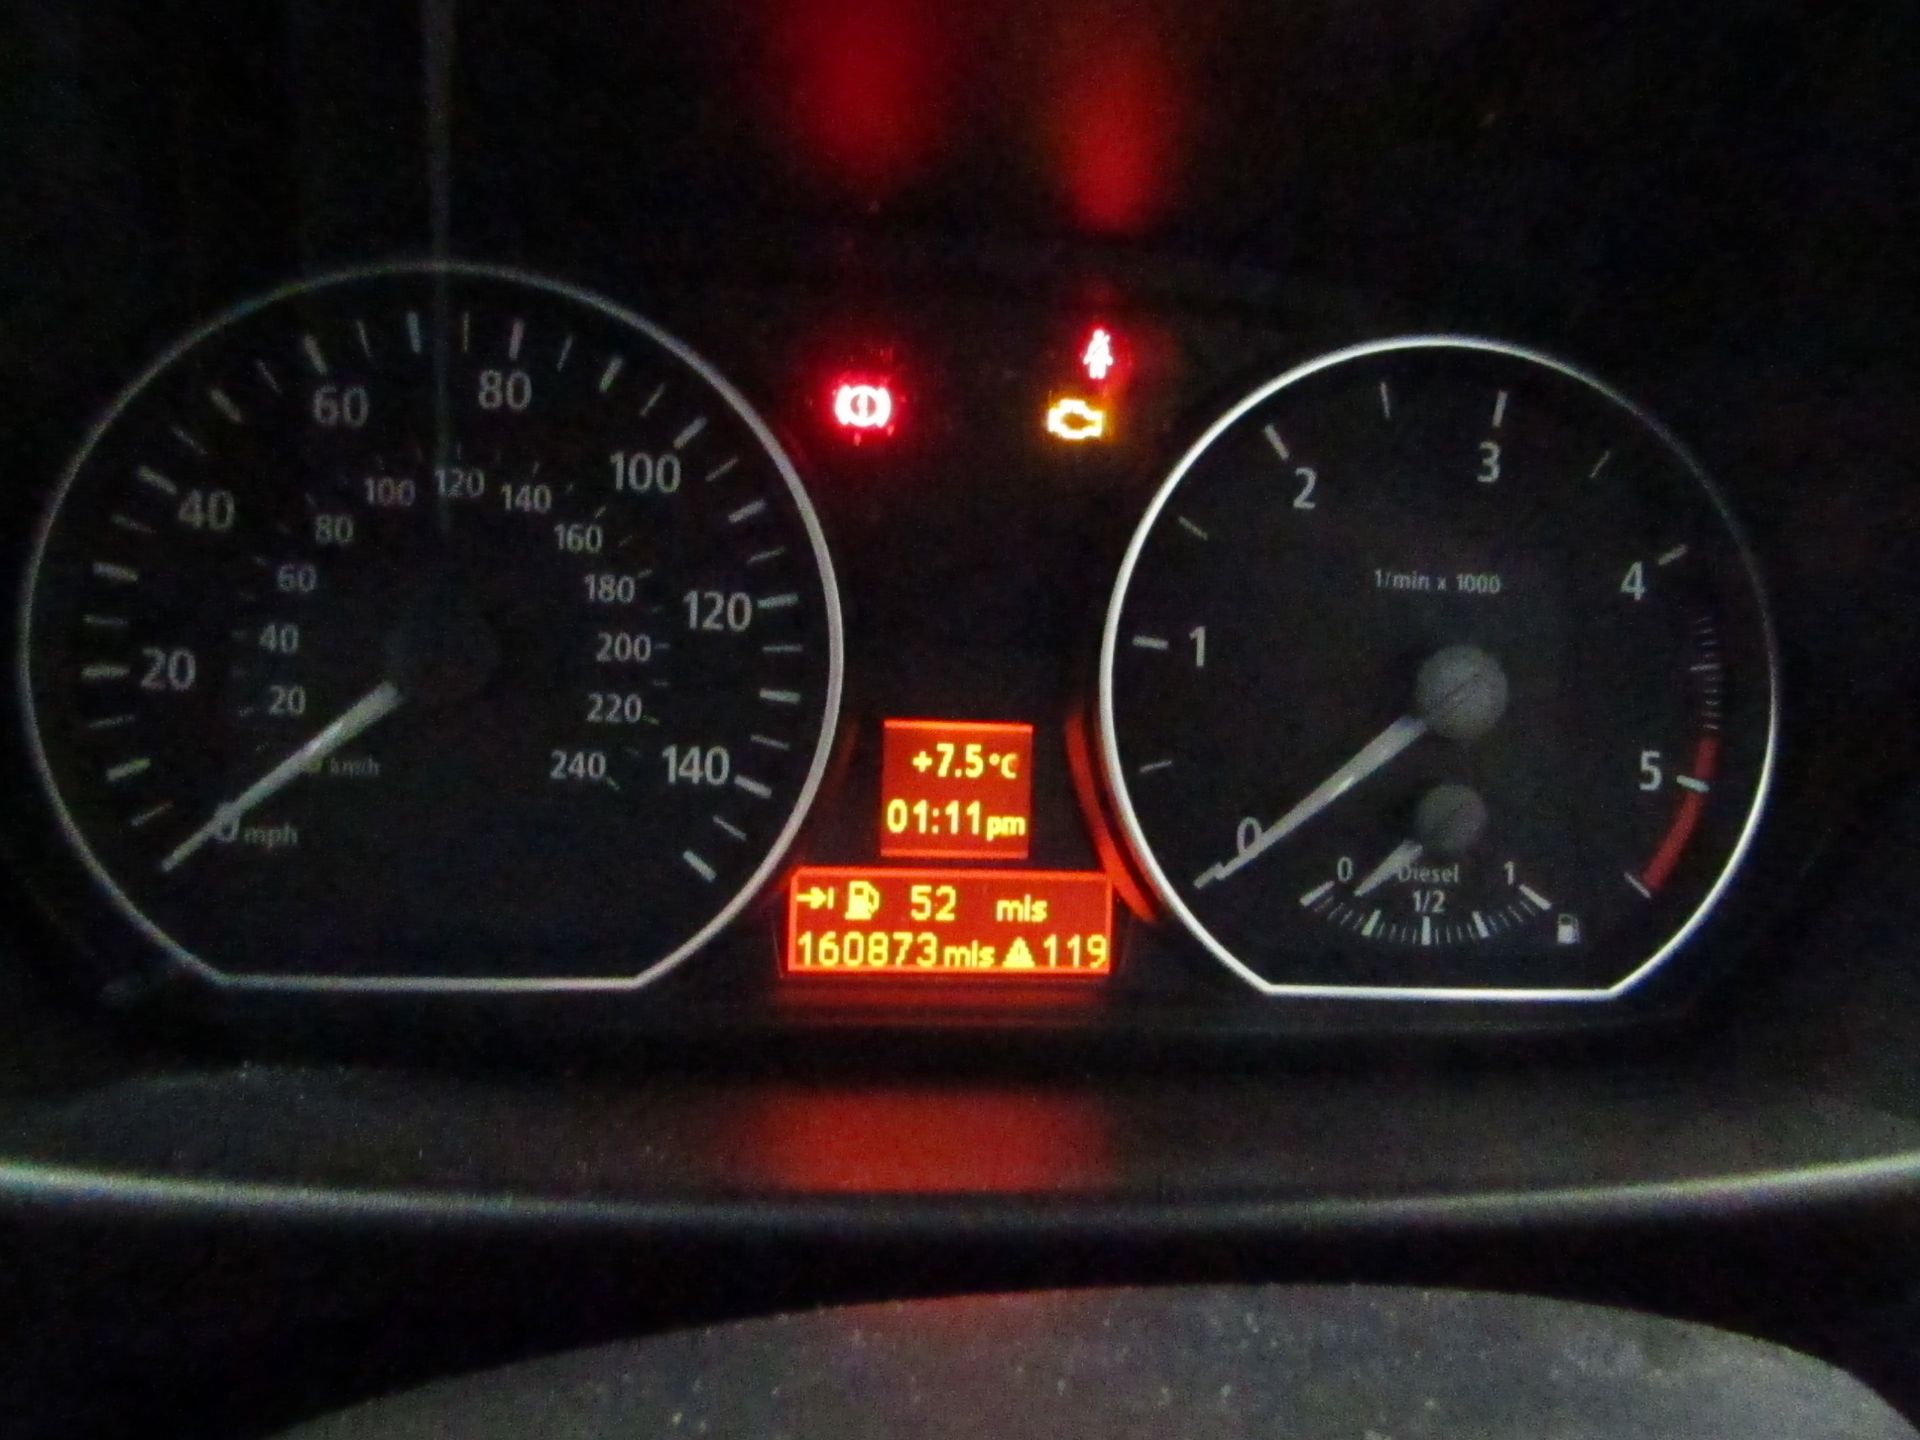 06 plate BMW 118d Sport 1995cc 160,873 miles, MOT'd until 17/4/19, 1st reg 19/5/06, V5 & two keys, - Image 9 of 14